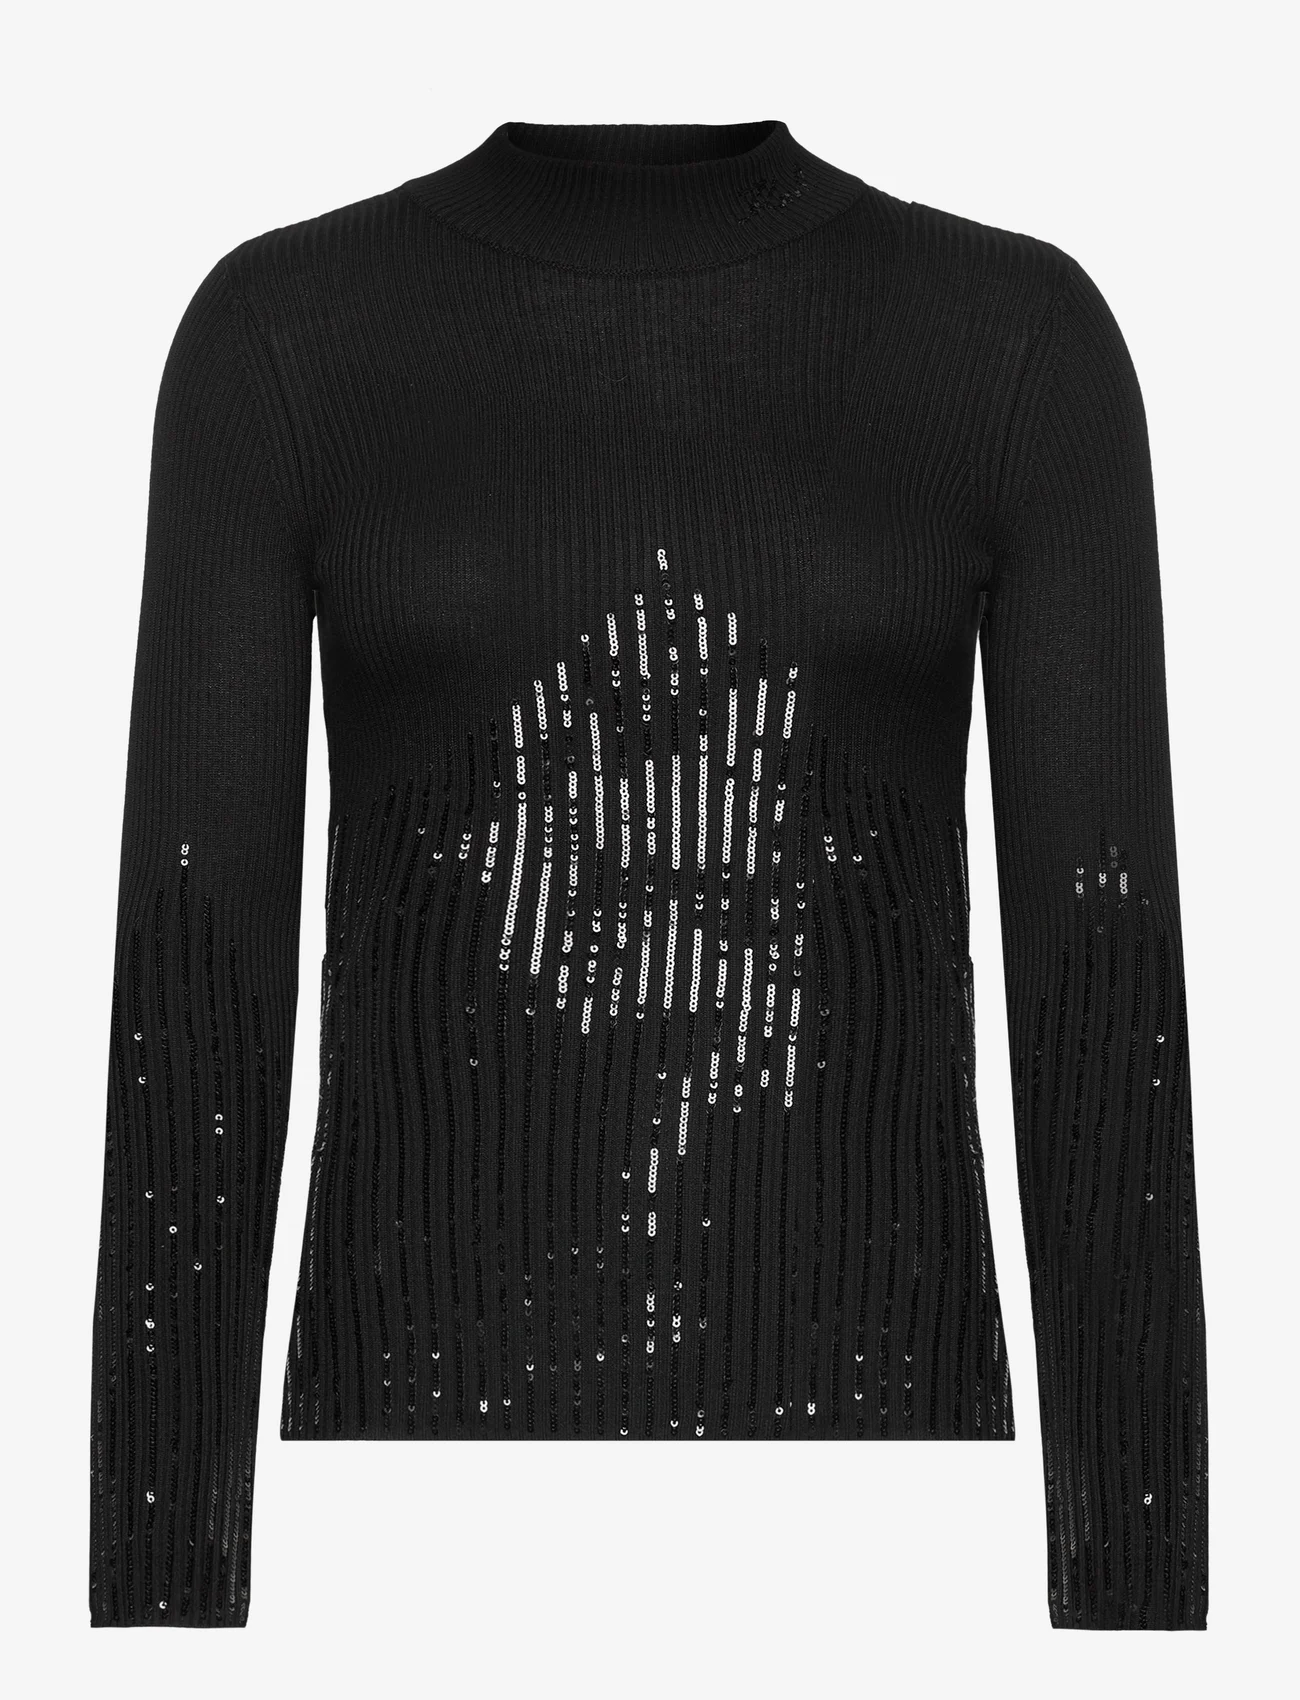 Karl Lagerfeld - lslv mockneck knit - tröjor - black - 0